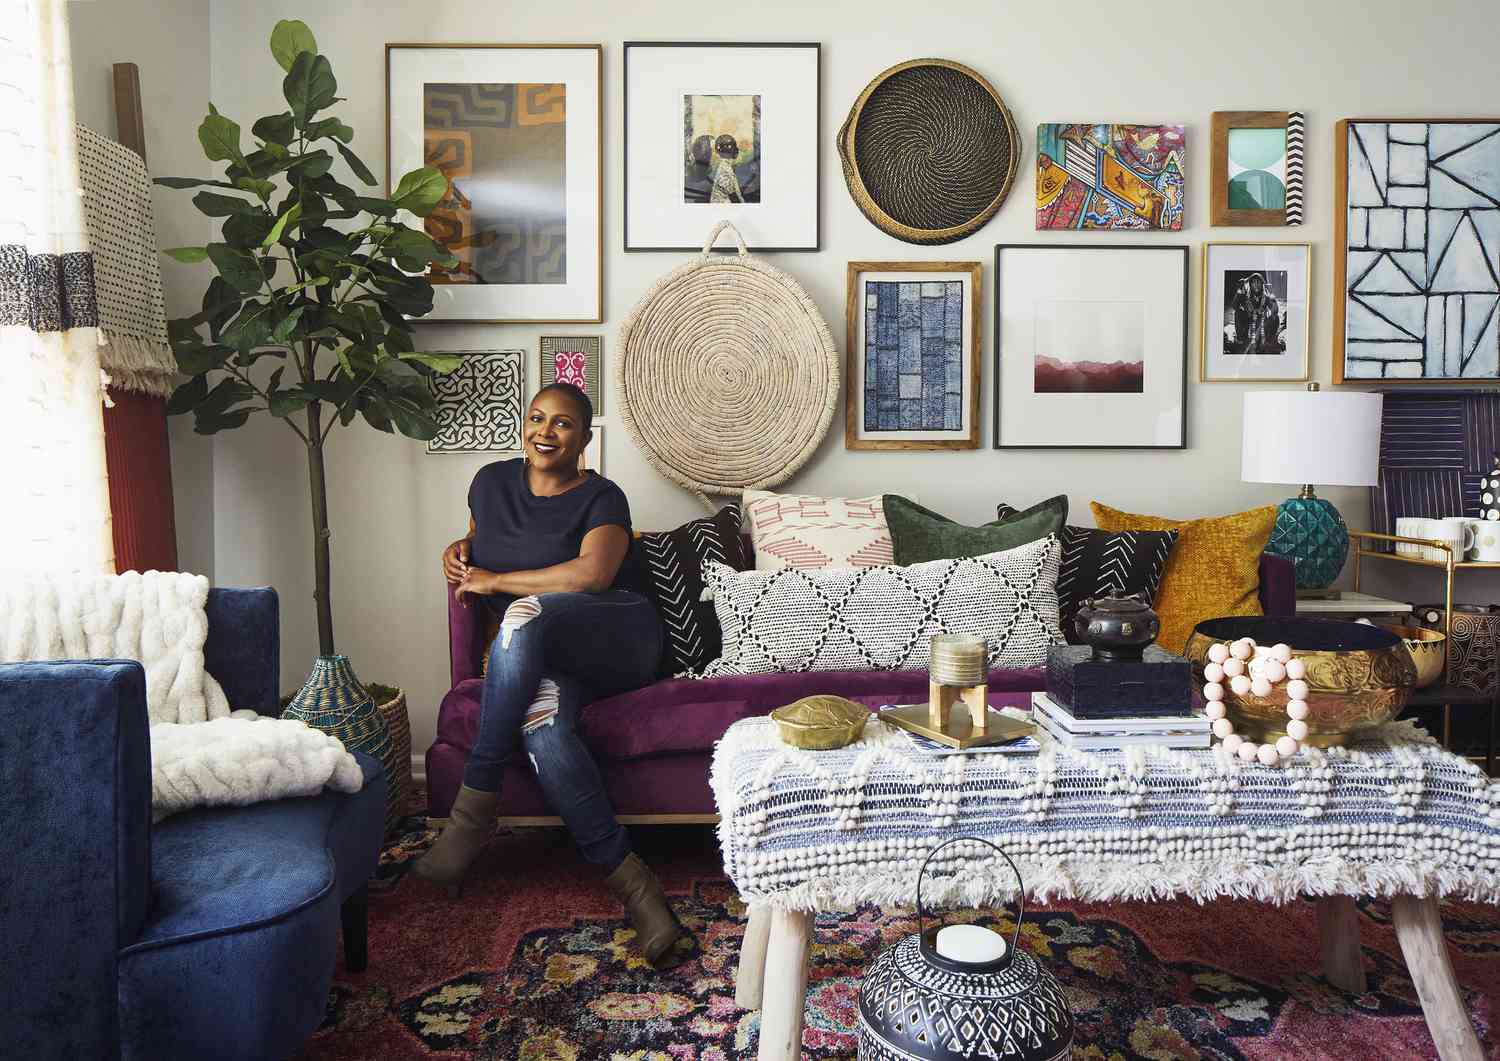 Beth Diana Smith posa en un sofá morado en una habitación con decoración boho chic